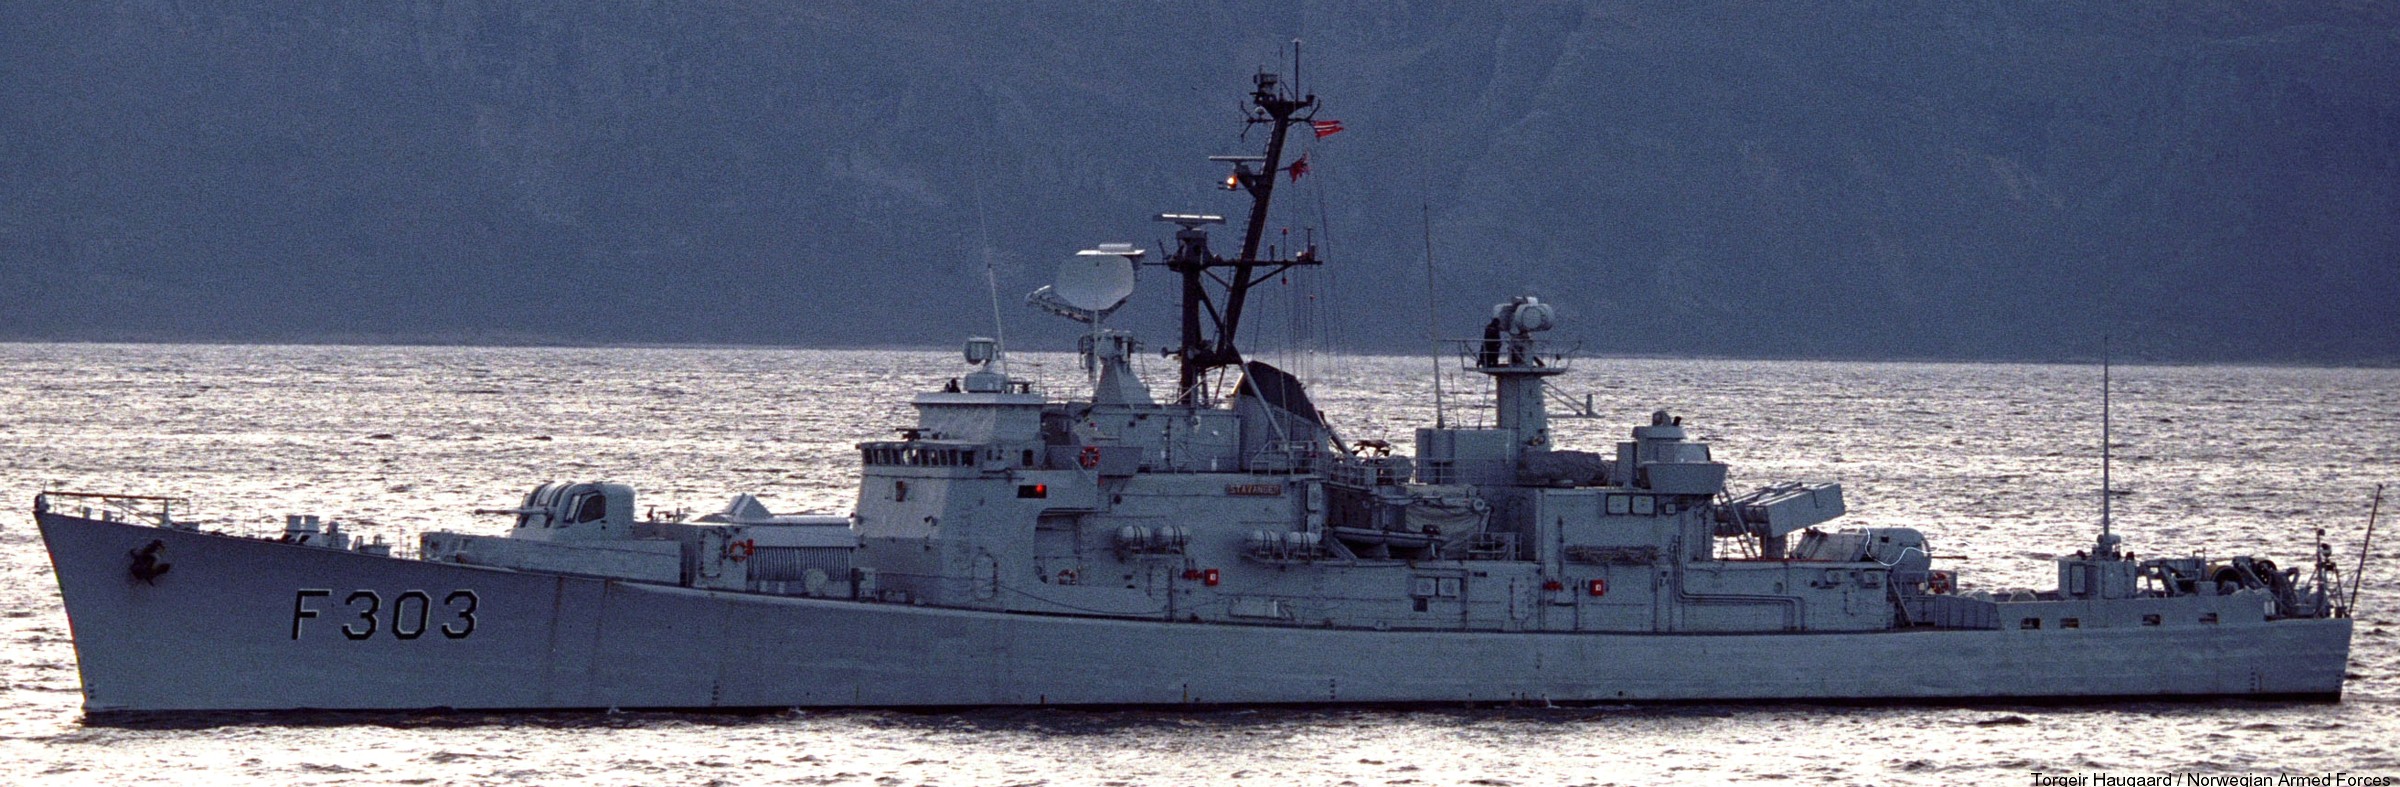 f-303 hnoms stavanger knm oslo class frigate royal norwegian navy sjoforsvaret 06